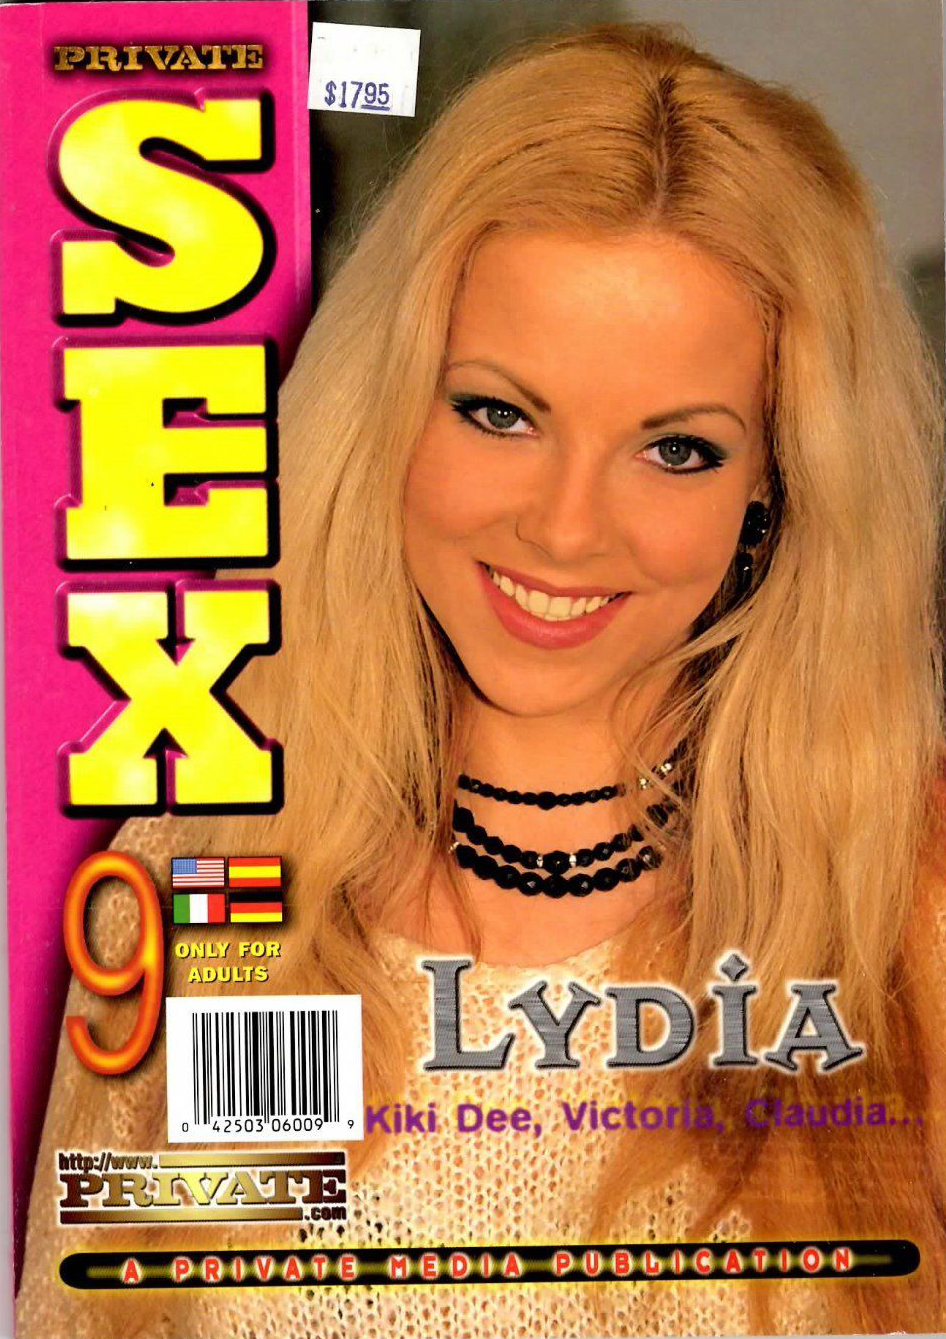 Private Sex # 9 magazine back issue Private Sex magizine back copy 